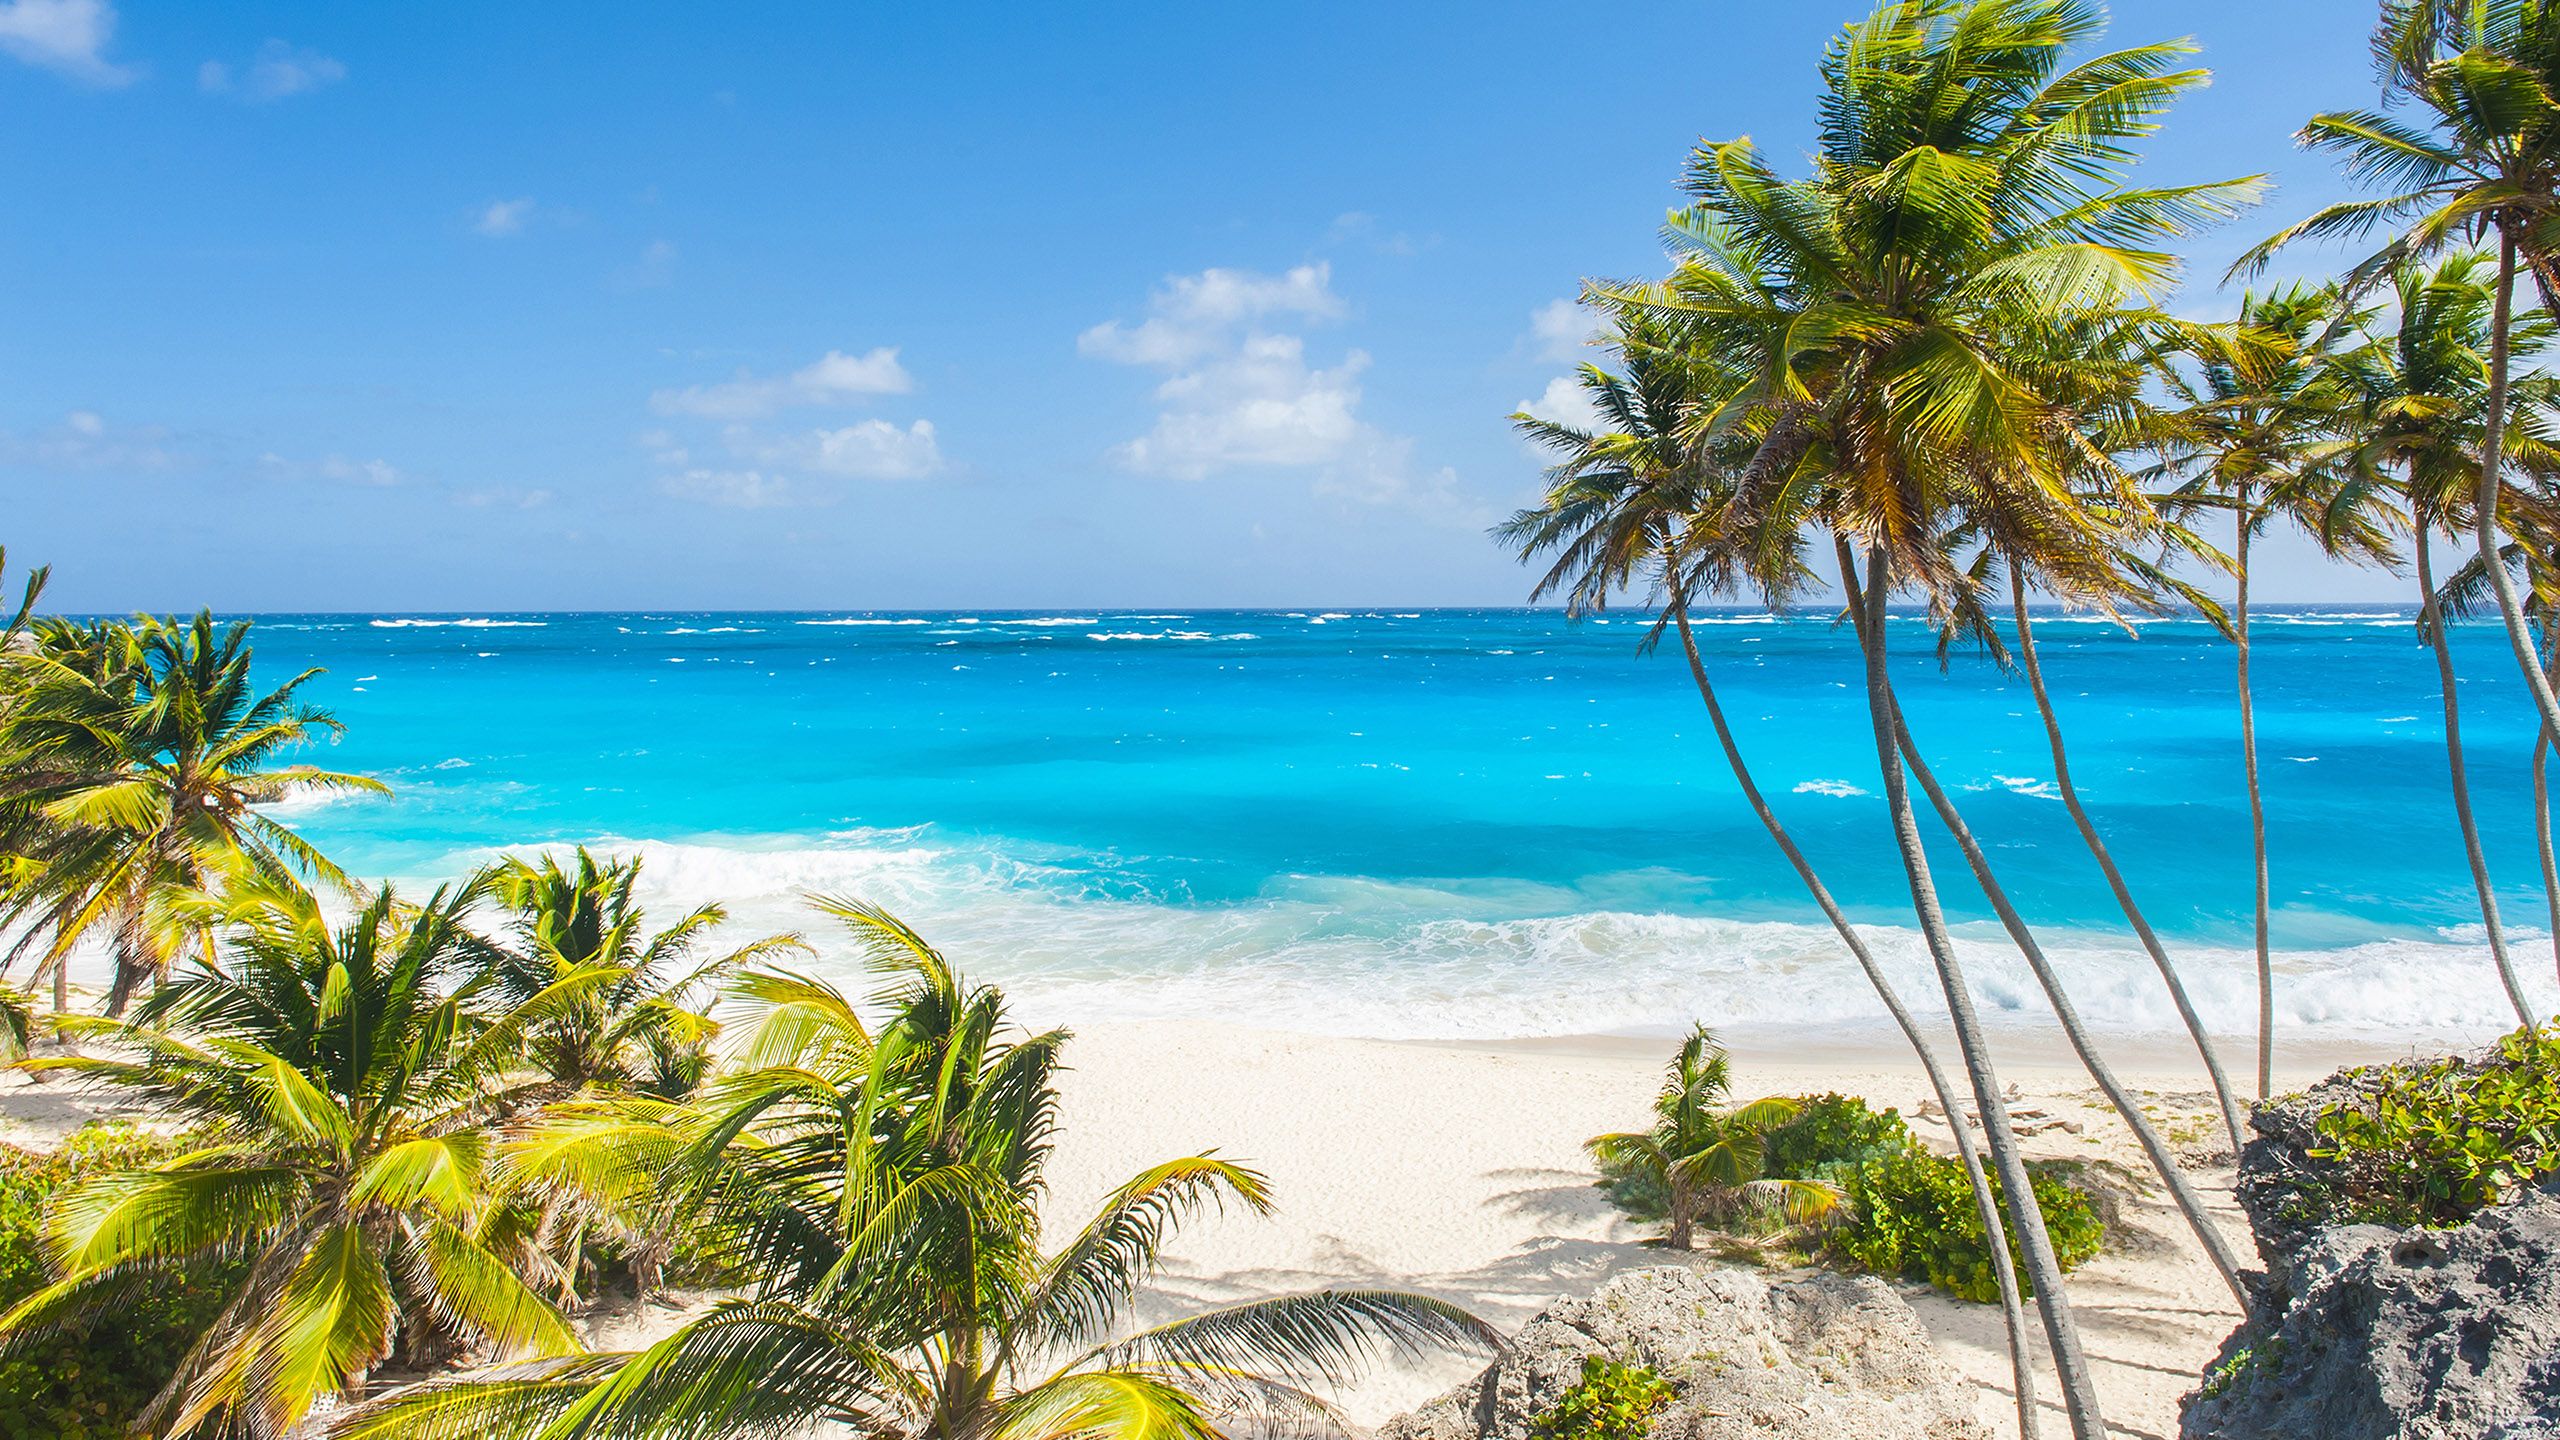 Barbados April 2022 Calendar With Holidays - Photos